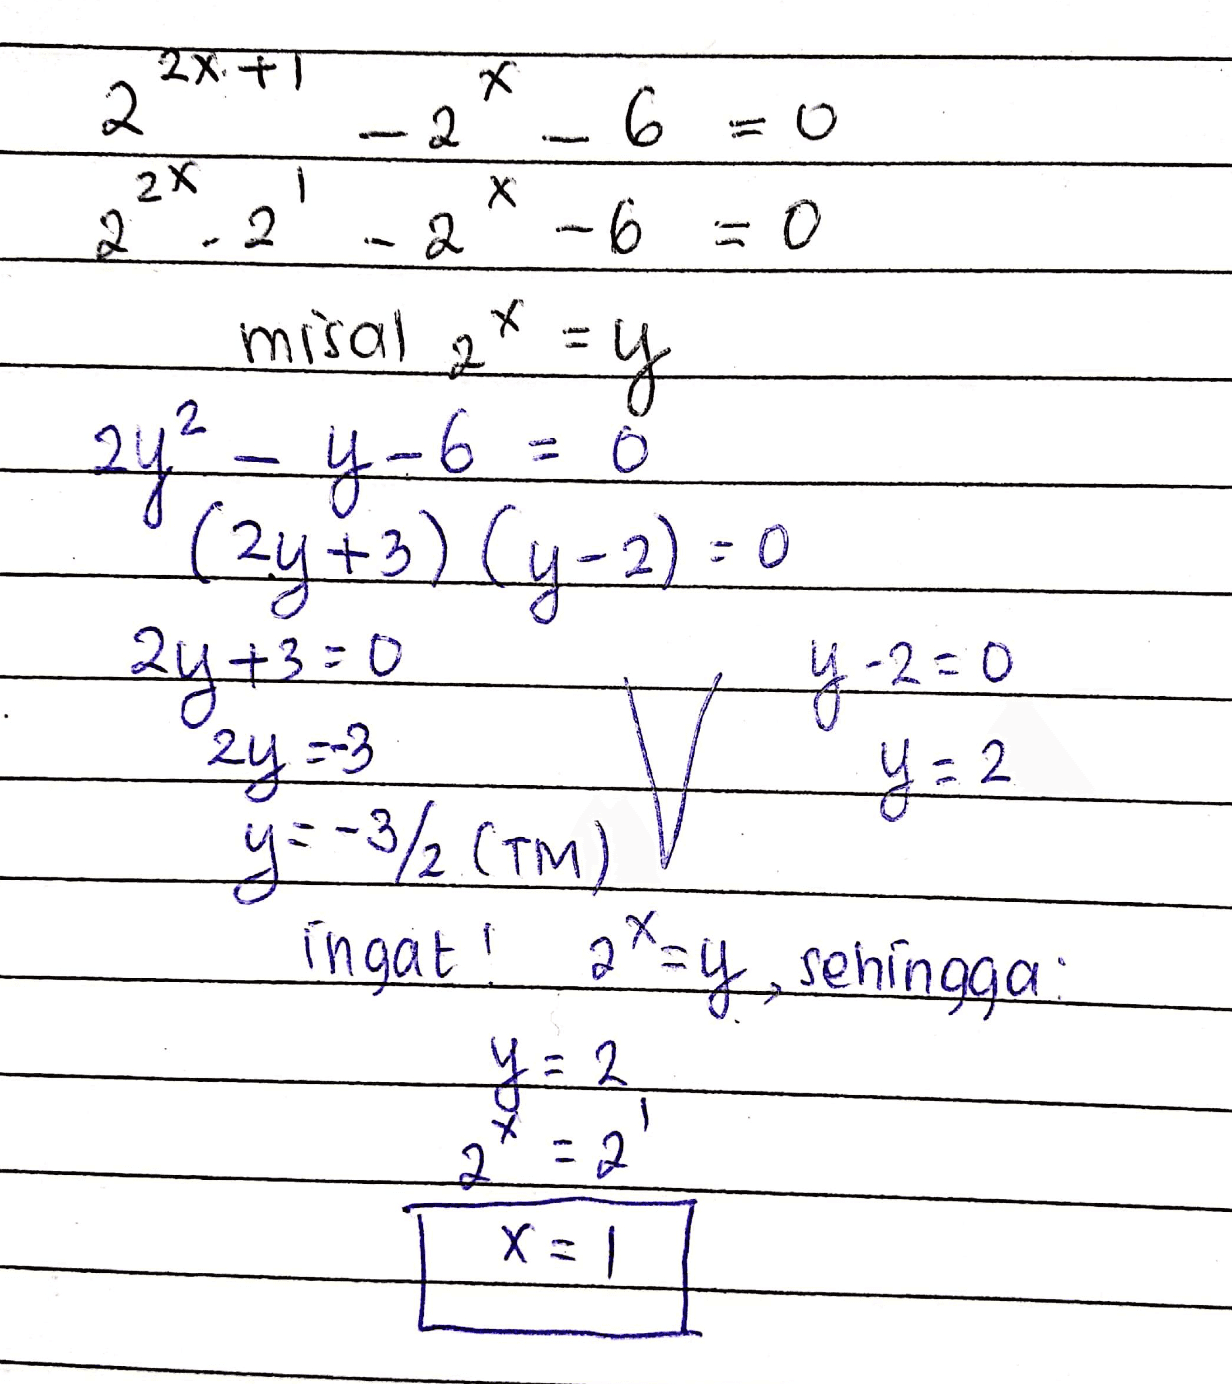 18 Х 2 ! 2x. + 2 2x 2 2 2 Х 6 -0 =0 2 misal * =y سشمت 24² - 4-6 (2y +3)(y-2): 2y +3=0 2y =-3 y=-3/2 (TM) 4.2=0 y = 2 ingat! p*sy, sehingga y = 2 주 232 X=1 